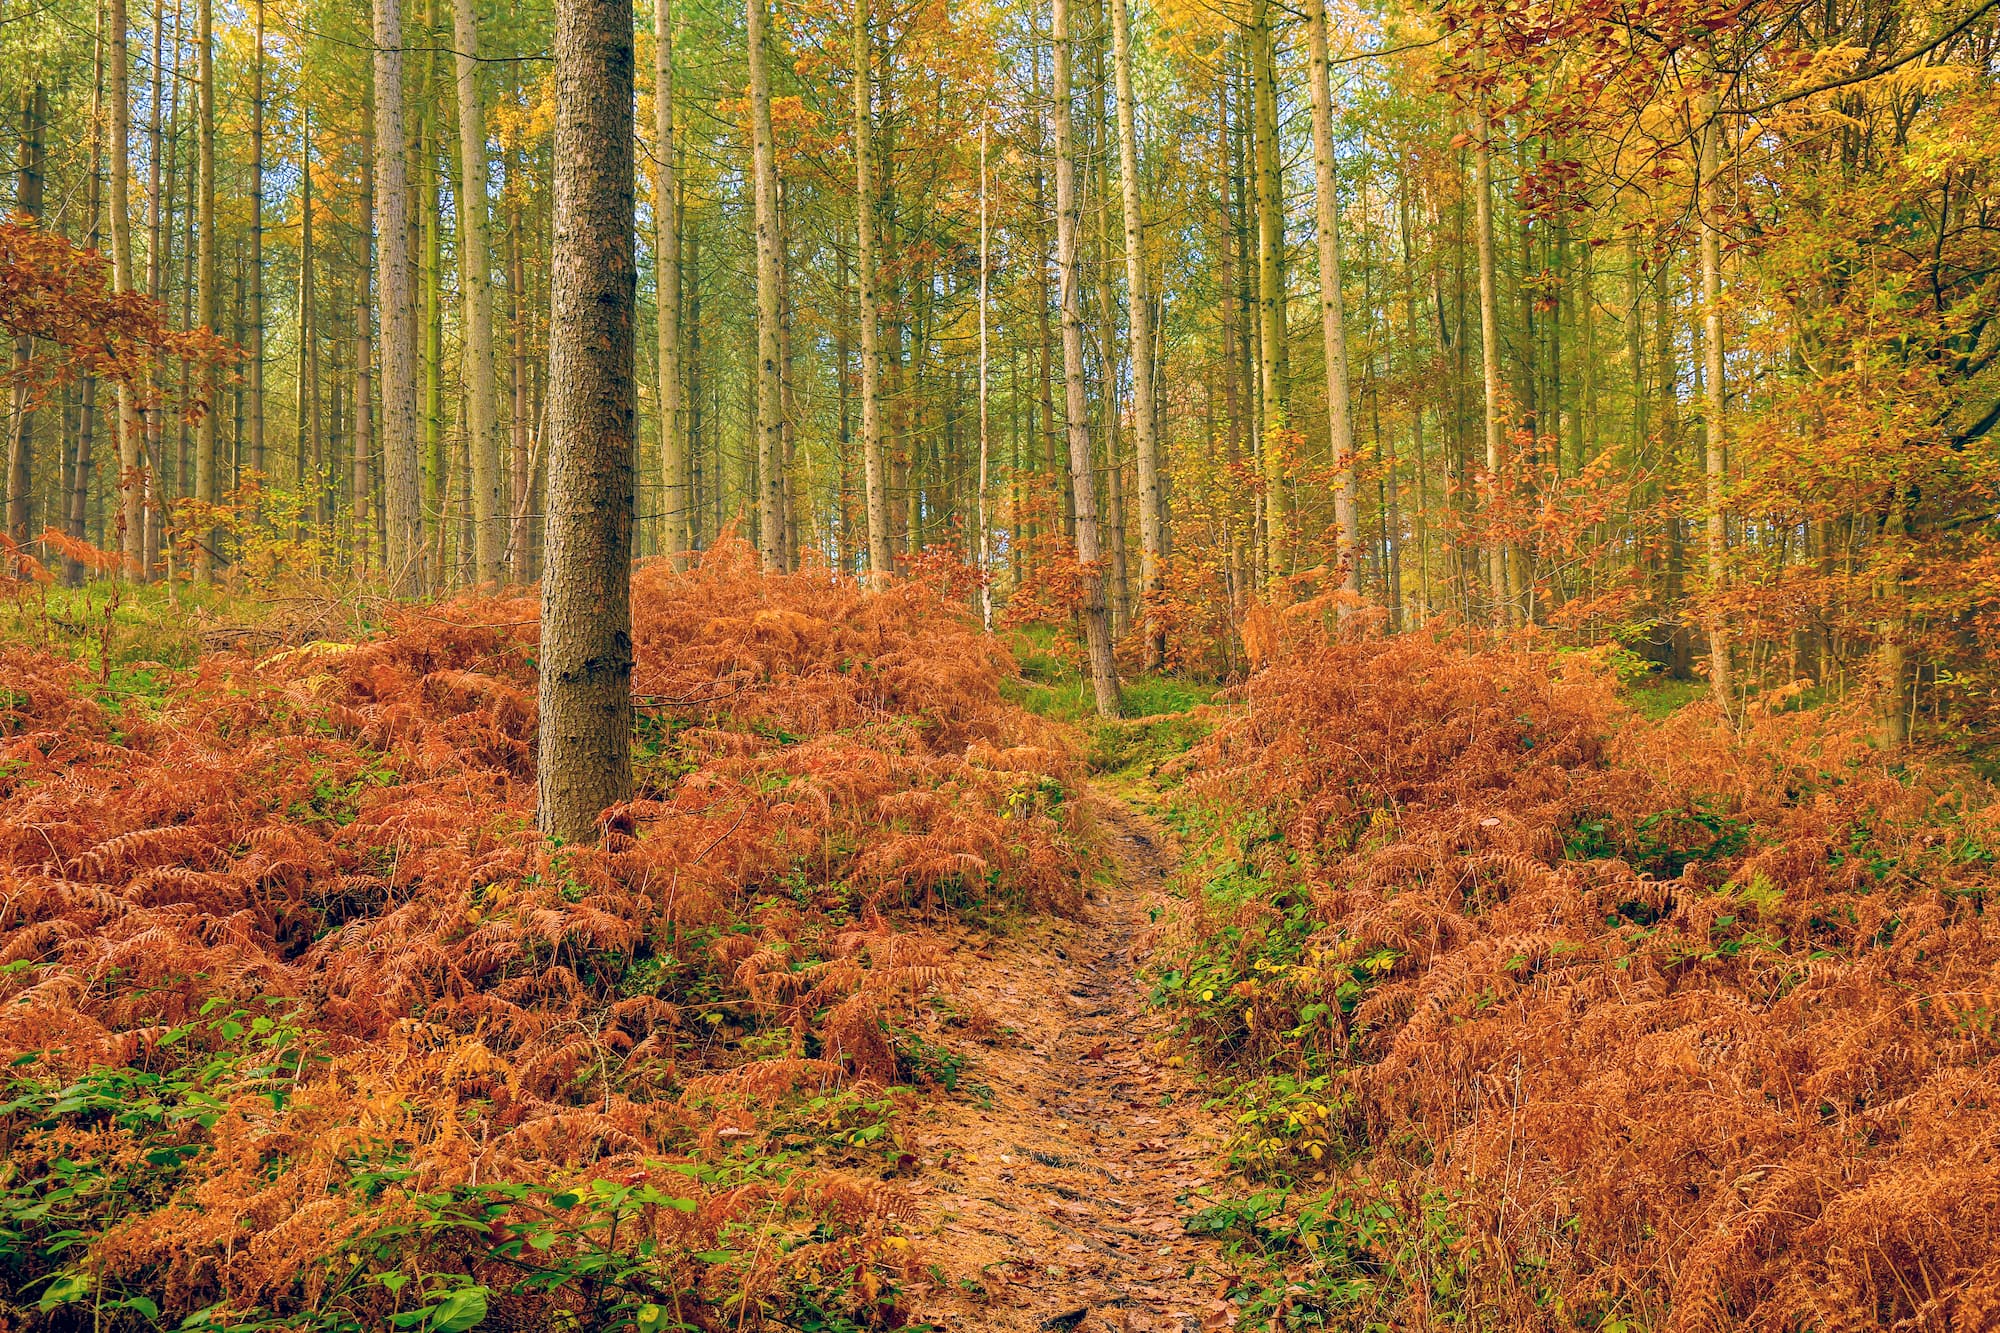 A path through a forest in autumn.